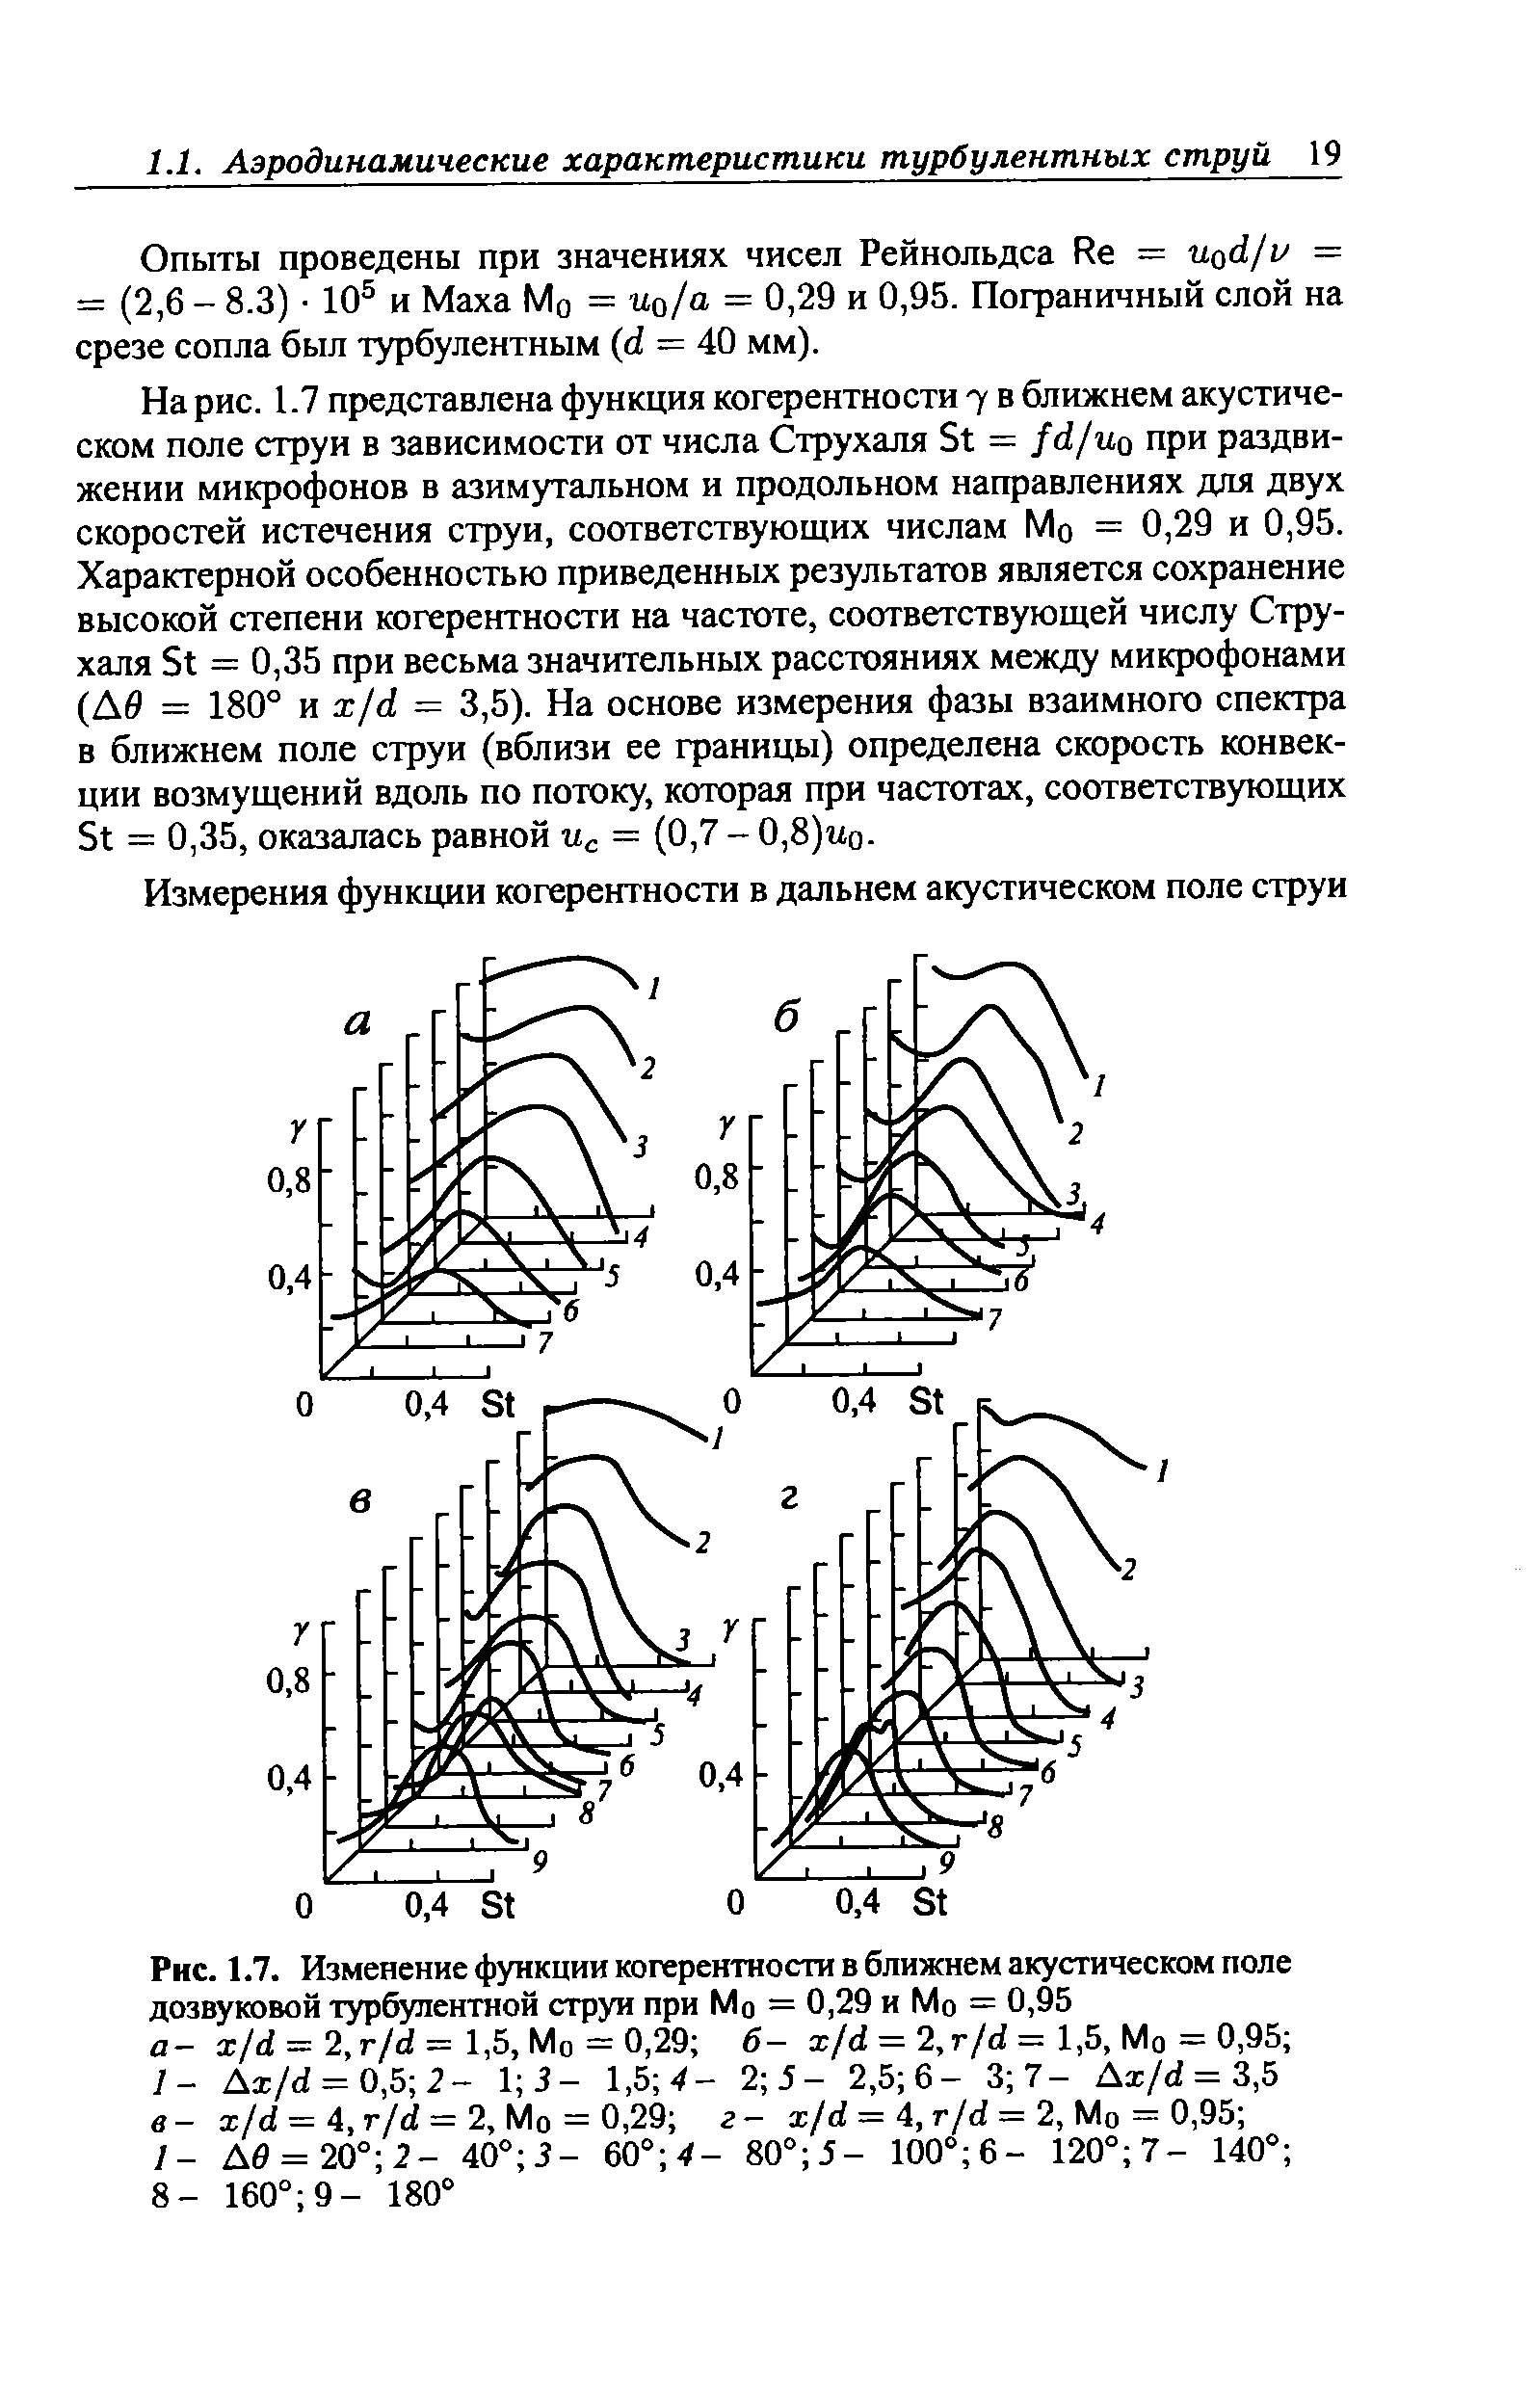 Рис. 1.7. Изменение функции когерентности в ближнем <a href="/info/394357">акустическом поле</a> дозвуковой турбулентной струи при Мо = 0,29 и Мо = 0,95 а- x/d = 2, r/d= 1,5, Мо = 0,29 б- i/d = 2,r/d = 1,5, Мо = 0,95 /- Ax/d = 0,5 2- V, 3 - 1,Ъ 4- 2 5 - 2,5 6- 3 7- Ai/d = 3,5 в- x/d = 4, r/d = 2, Мо = 0,29 г- x/d = 4, r/d = 2, Мо = 0,95 
